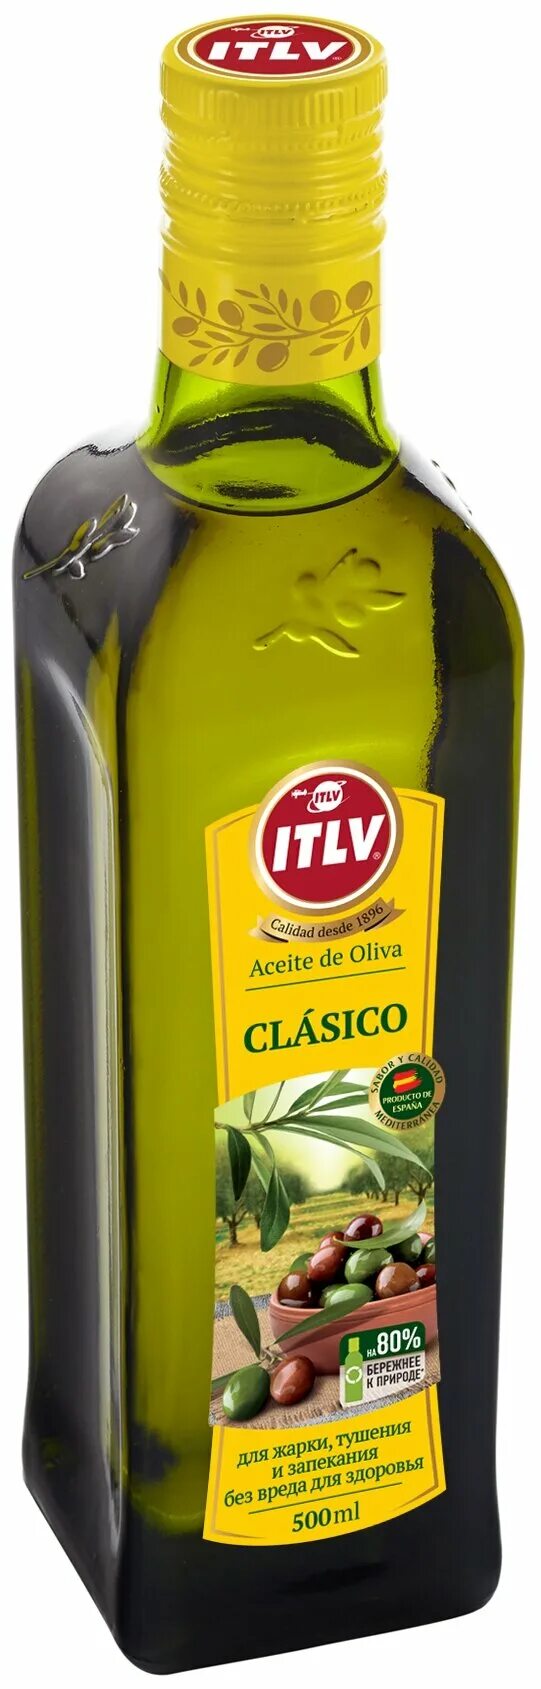 Оливковое масло ITLV Extra Virgen 500мл. Масло оливковое 100% ITLV 500мл.. Оливковое масло ITLV clasico 500мл. Масло оливковое ITLV 100% clasico, 1,0 л.